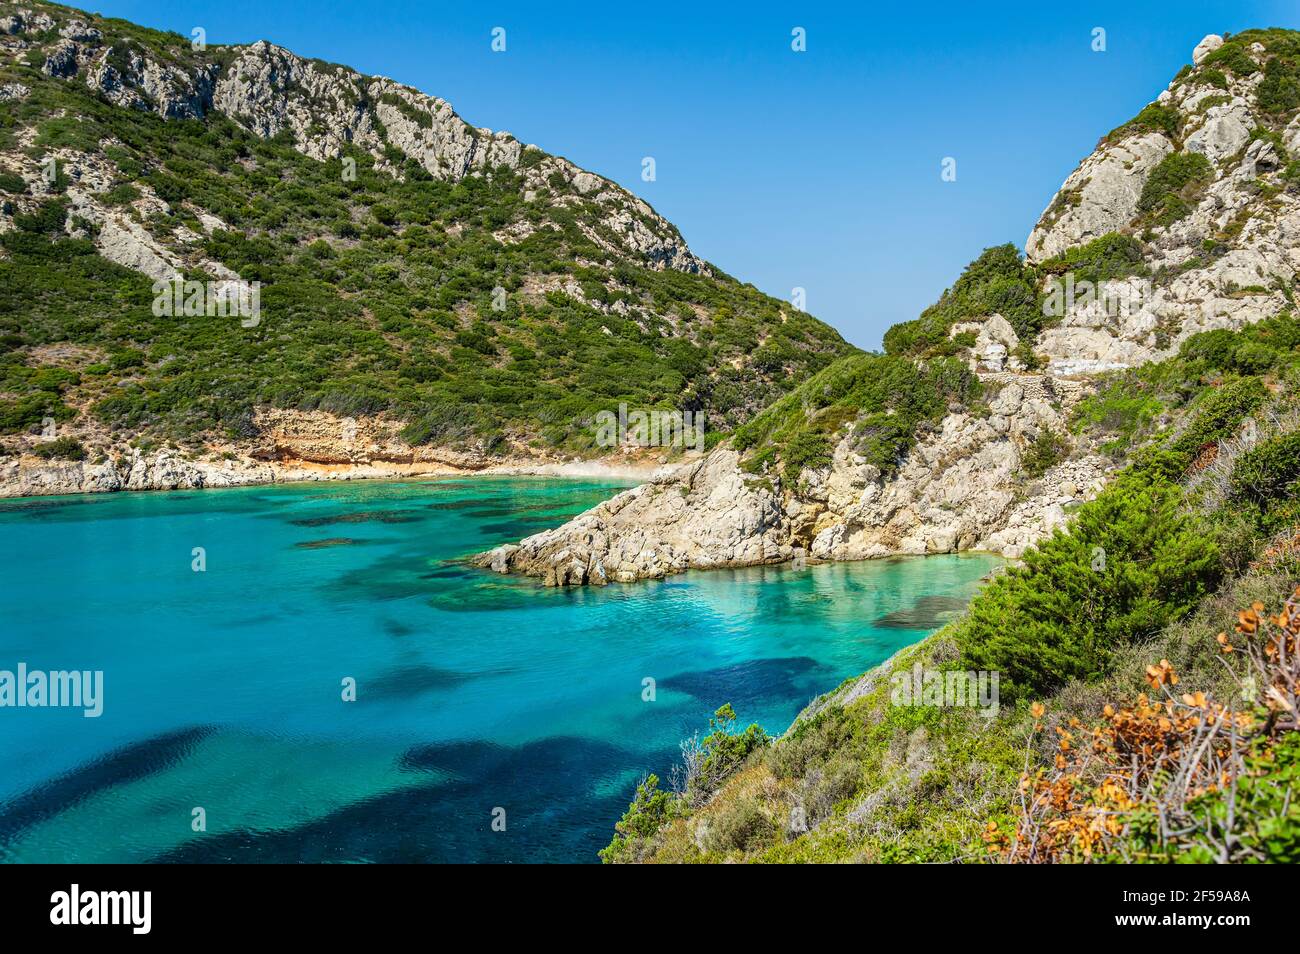 Plage de Porto Timoni sur l'île de Corfou en Grèce. Belle vue sur les montagnes verdoyantes, eau de mer claire, baie Pirates isolée et plage de pierres cachées. Célèbre Banque D'Images